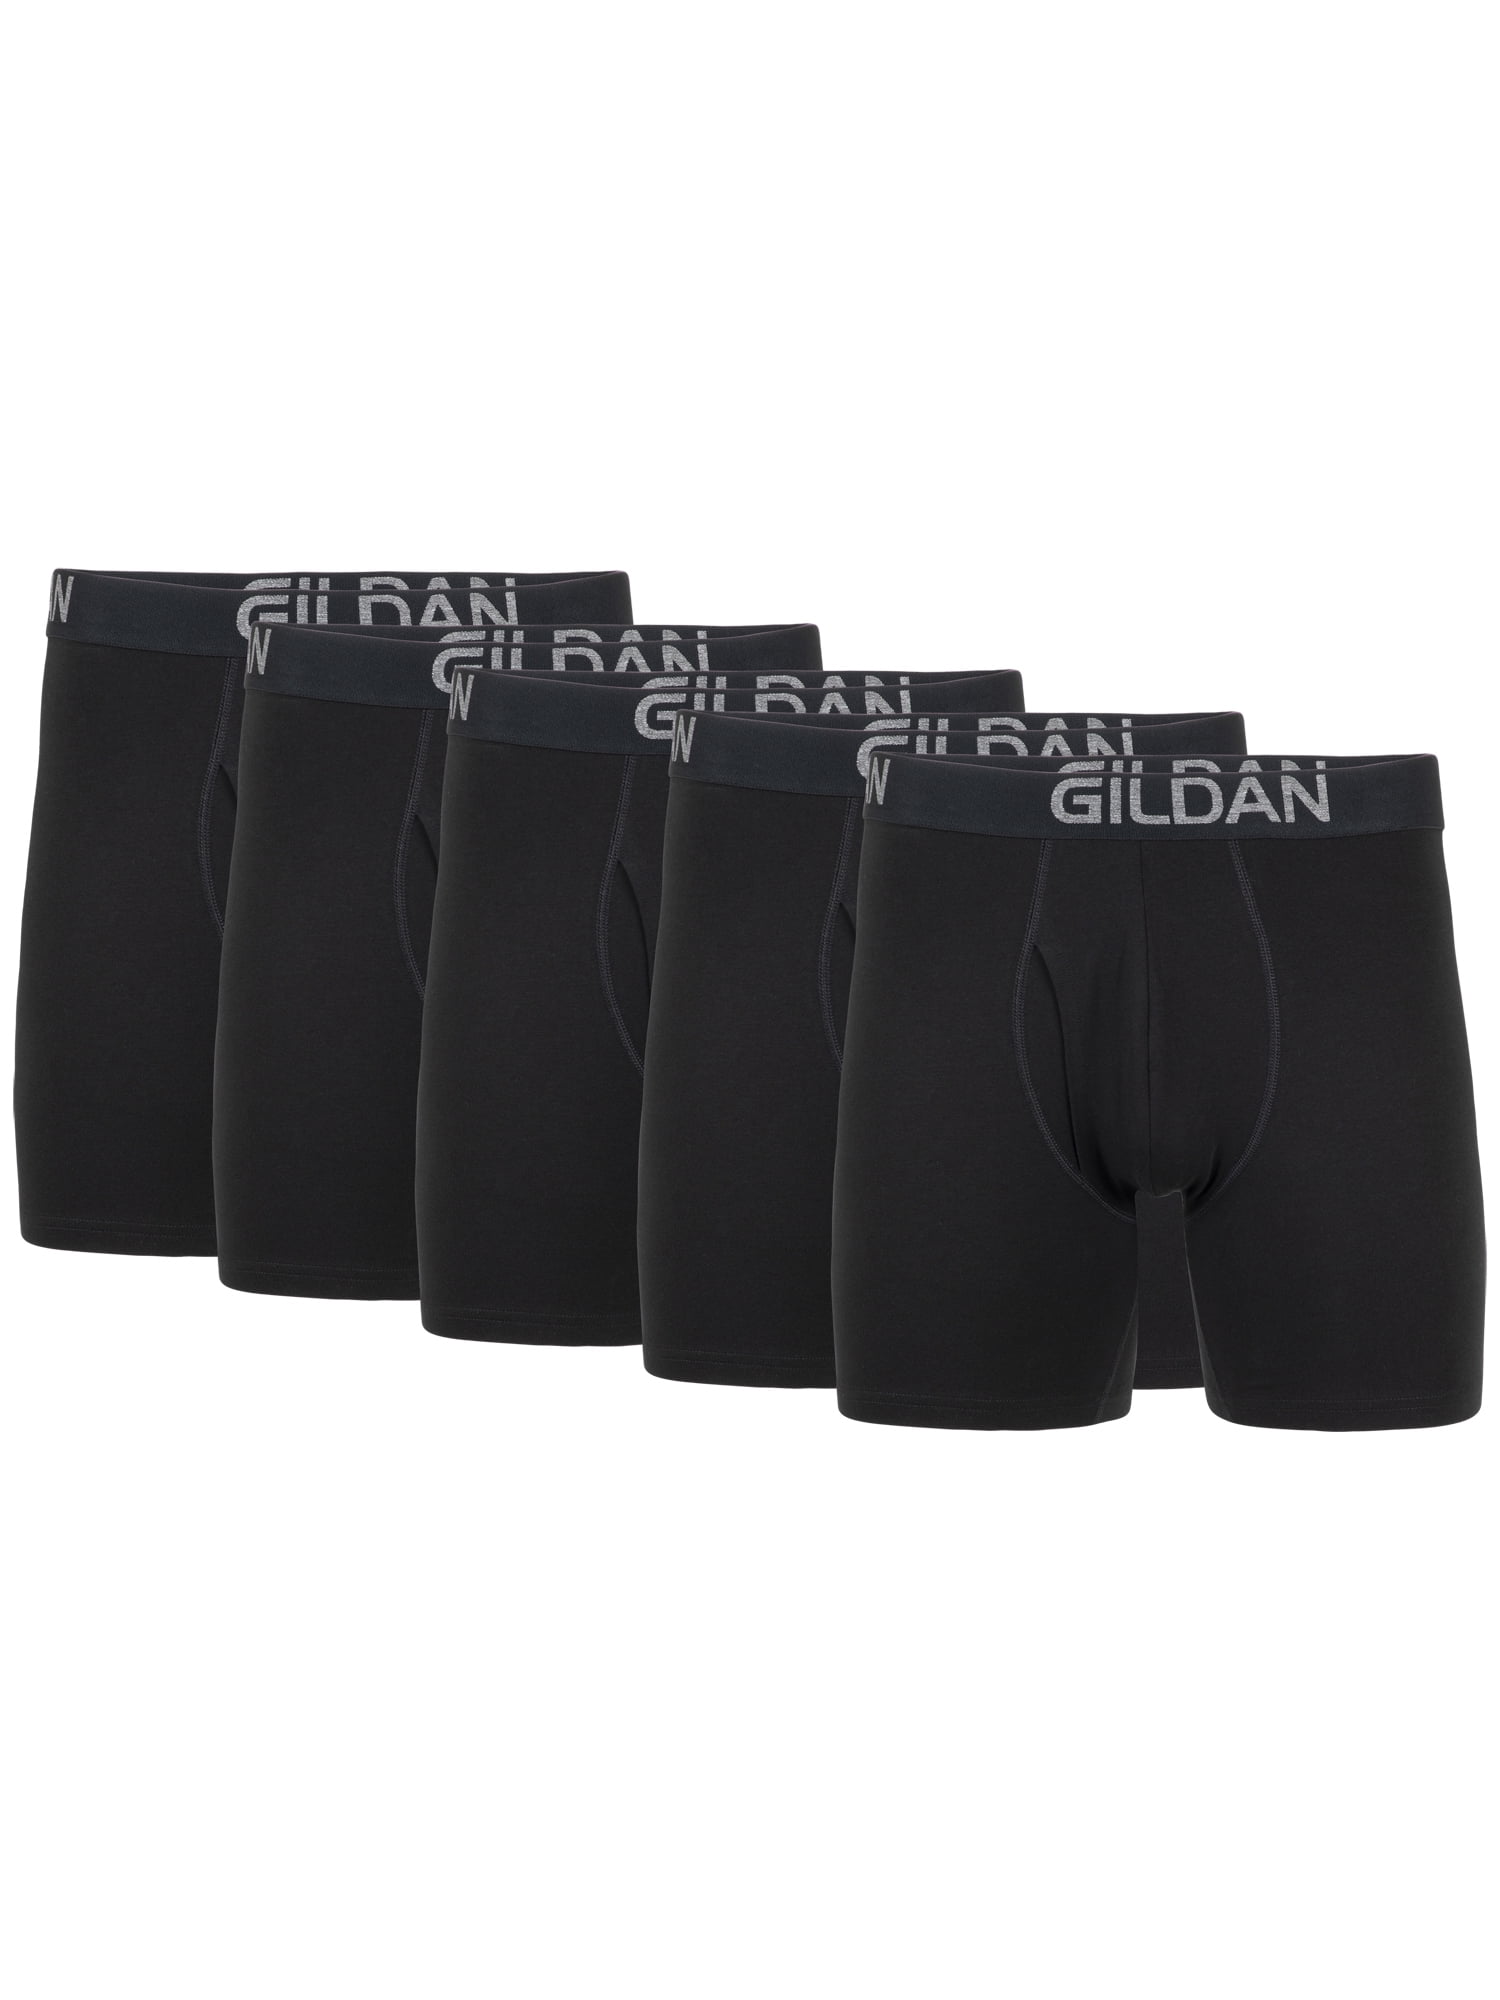 Gildan Men's Cotton Stretch Regular Leg Boxer Briefs, 5-Pack